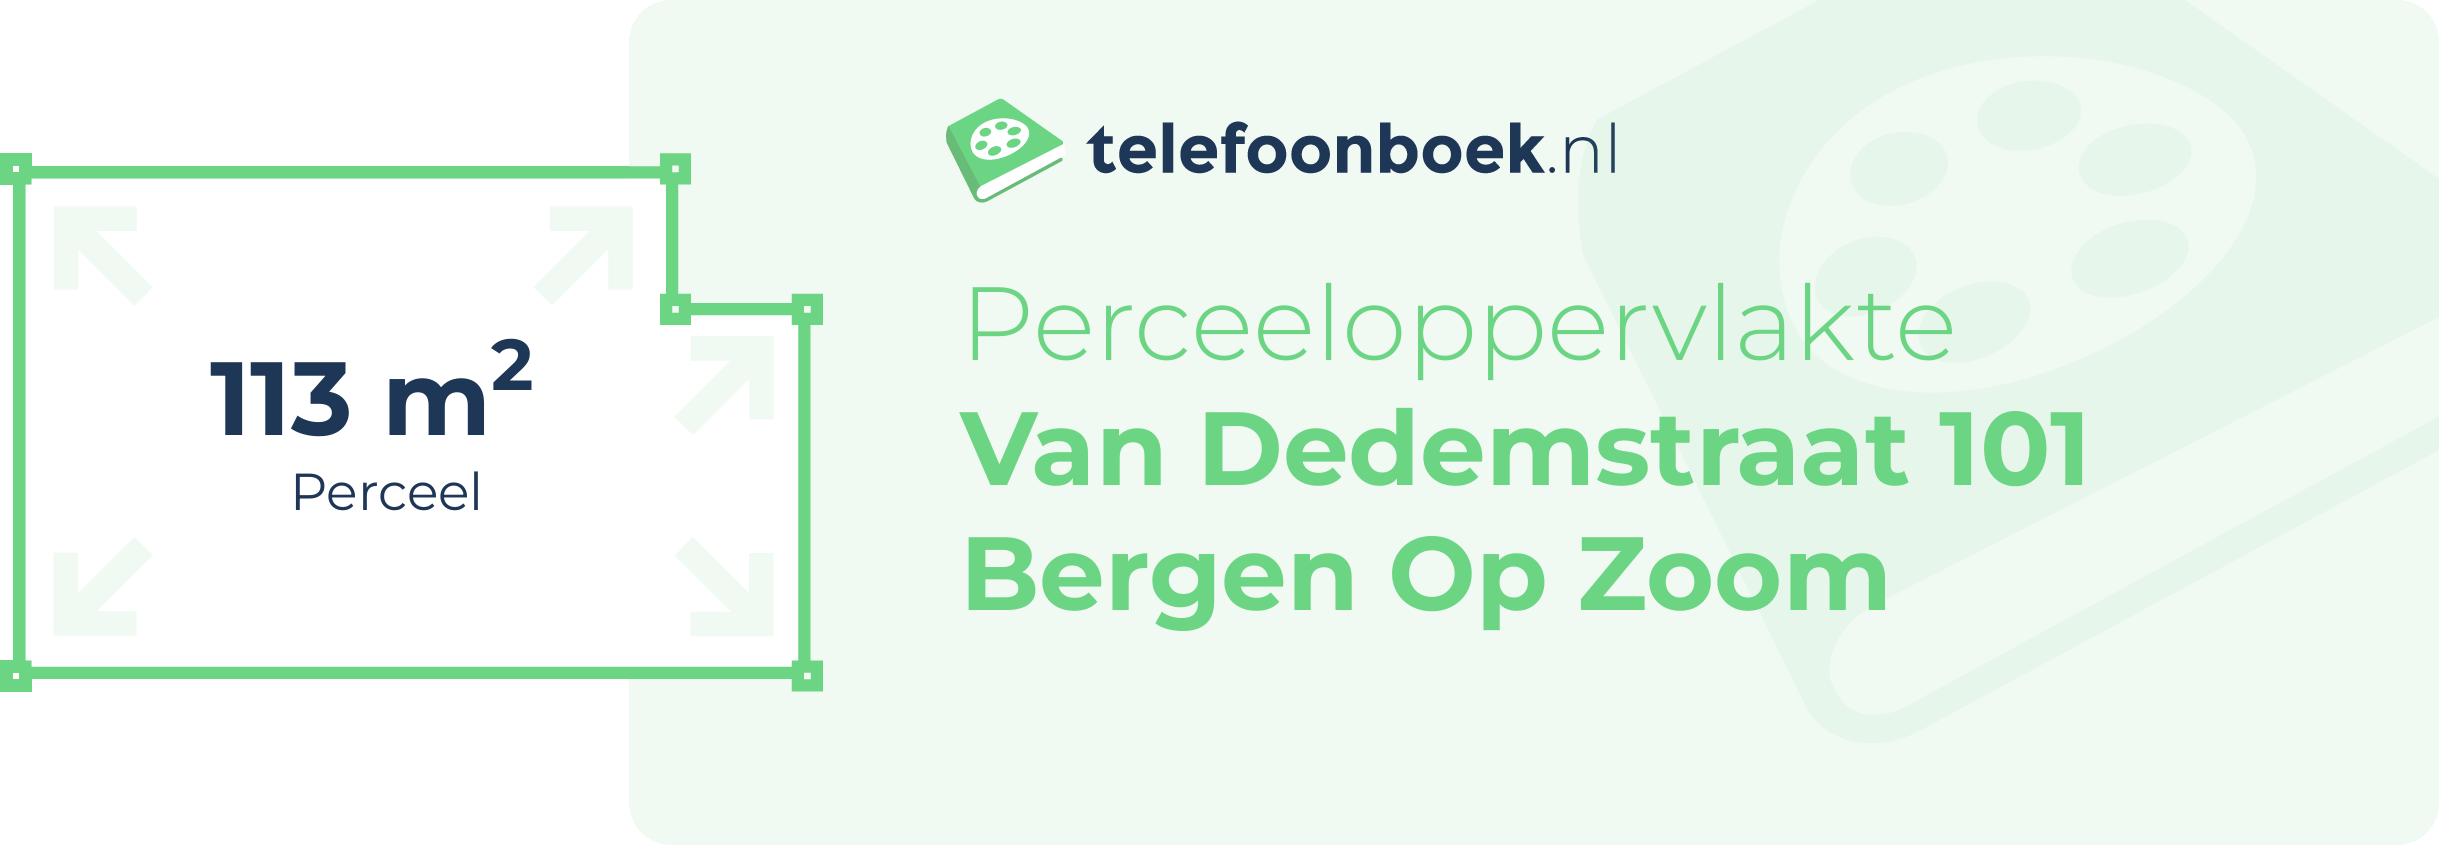 Perceeloppervlakte Van Dedemstraat 101 Bergen Op Zoom